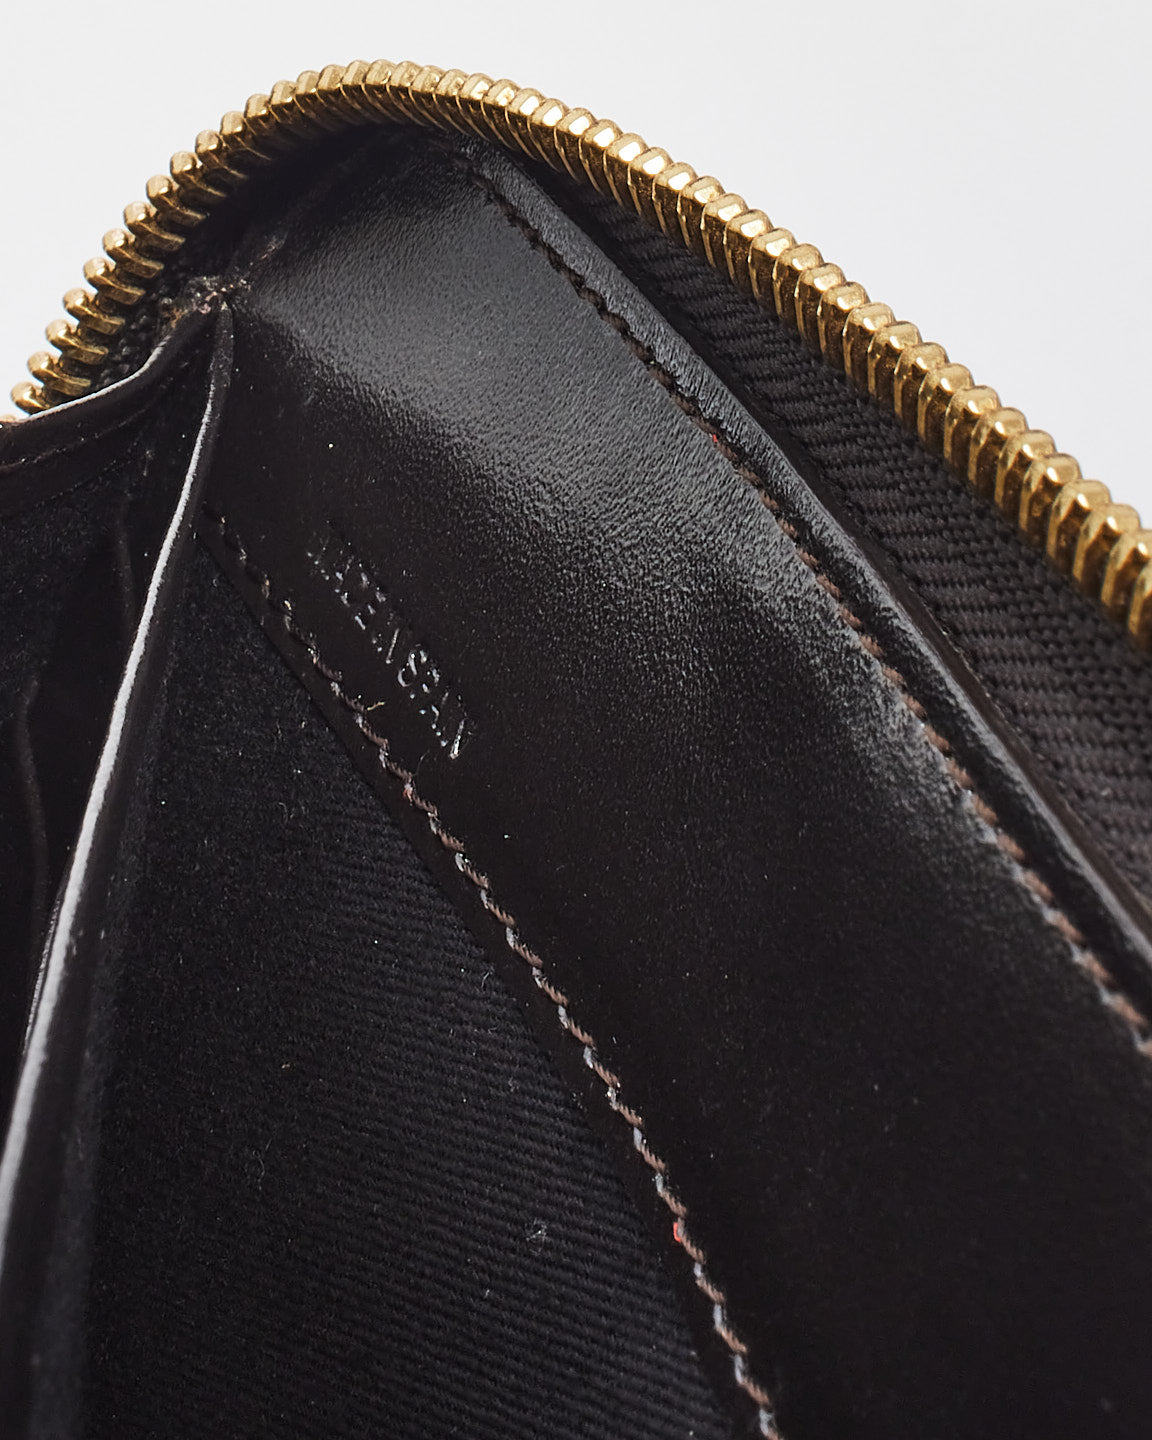 Portefeuille long zippé en cuir noir Givenchy